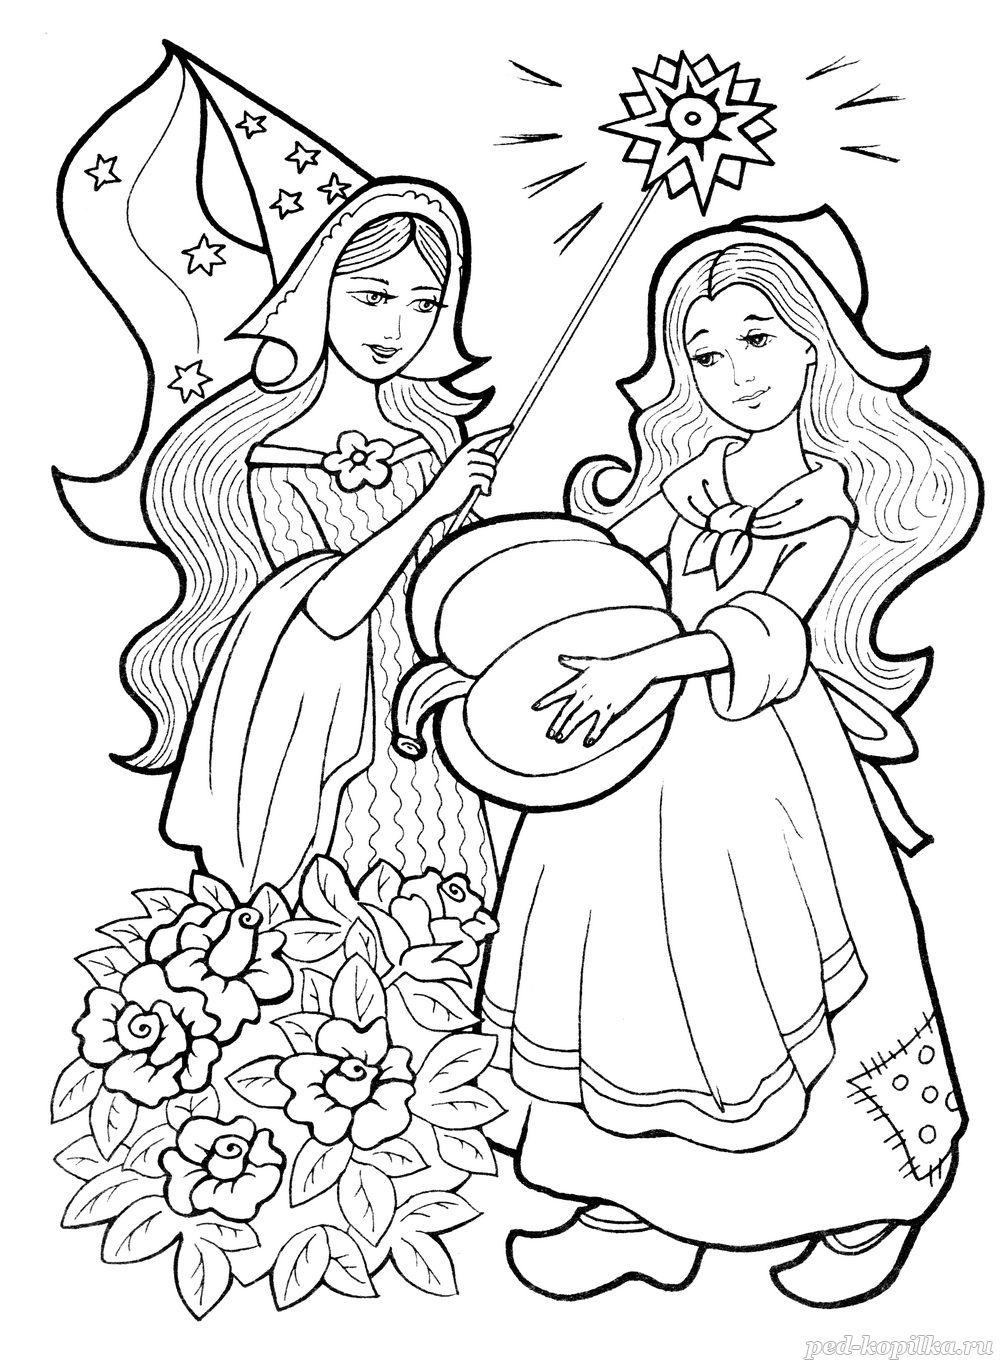 Розмальовки казками Попелюшка і чарівниця з гарбузом в руці чарівна паличка